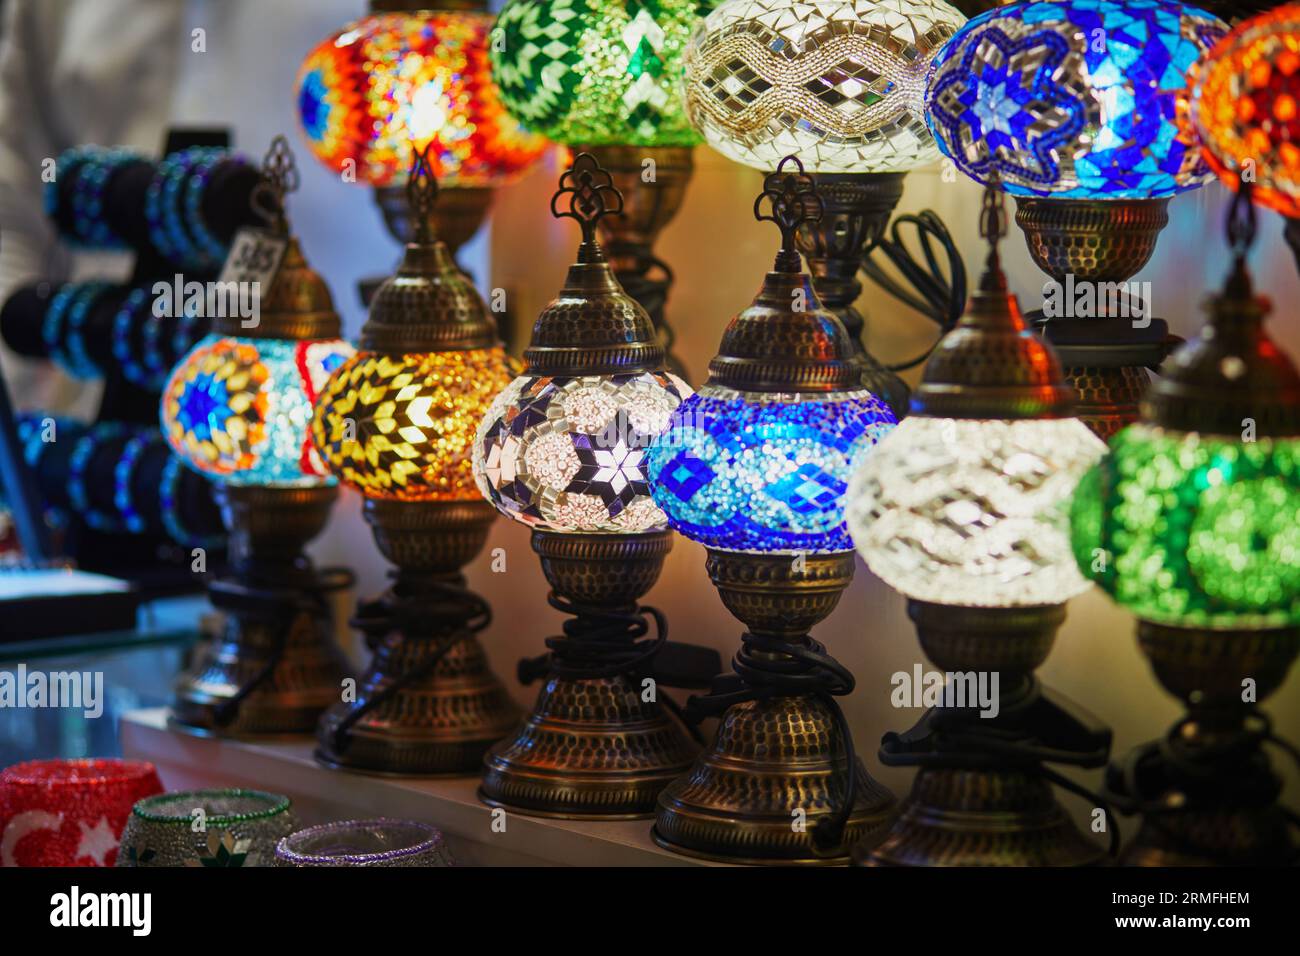 Selezione di colorate lampade turche sul Bazar egiziano o sul Bazar delle spezie, uno dei più grandi bazar di Istanbul, Turchia. Il mercato vende spezie, dolci, j Foto Stock